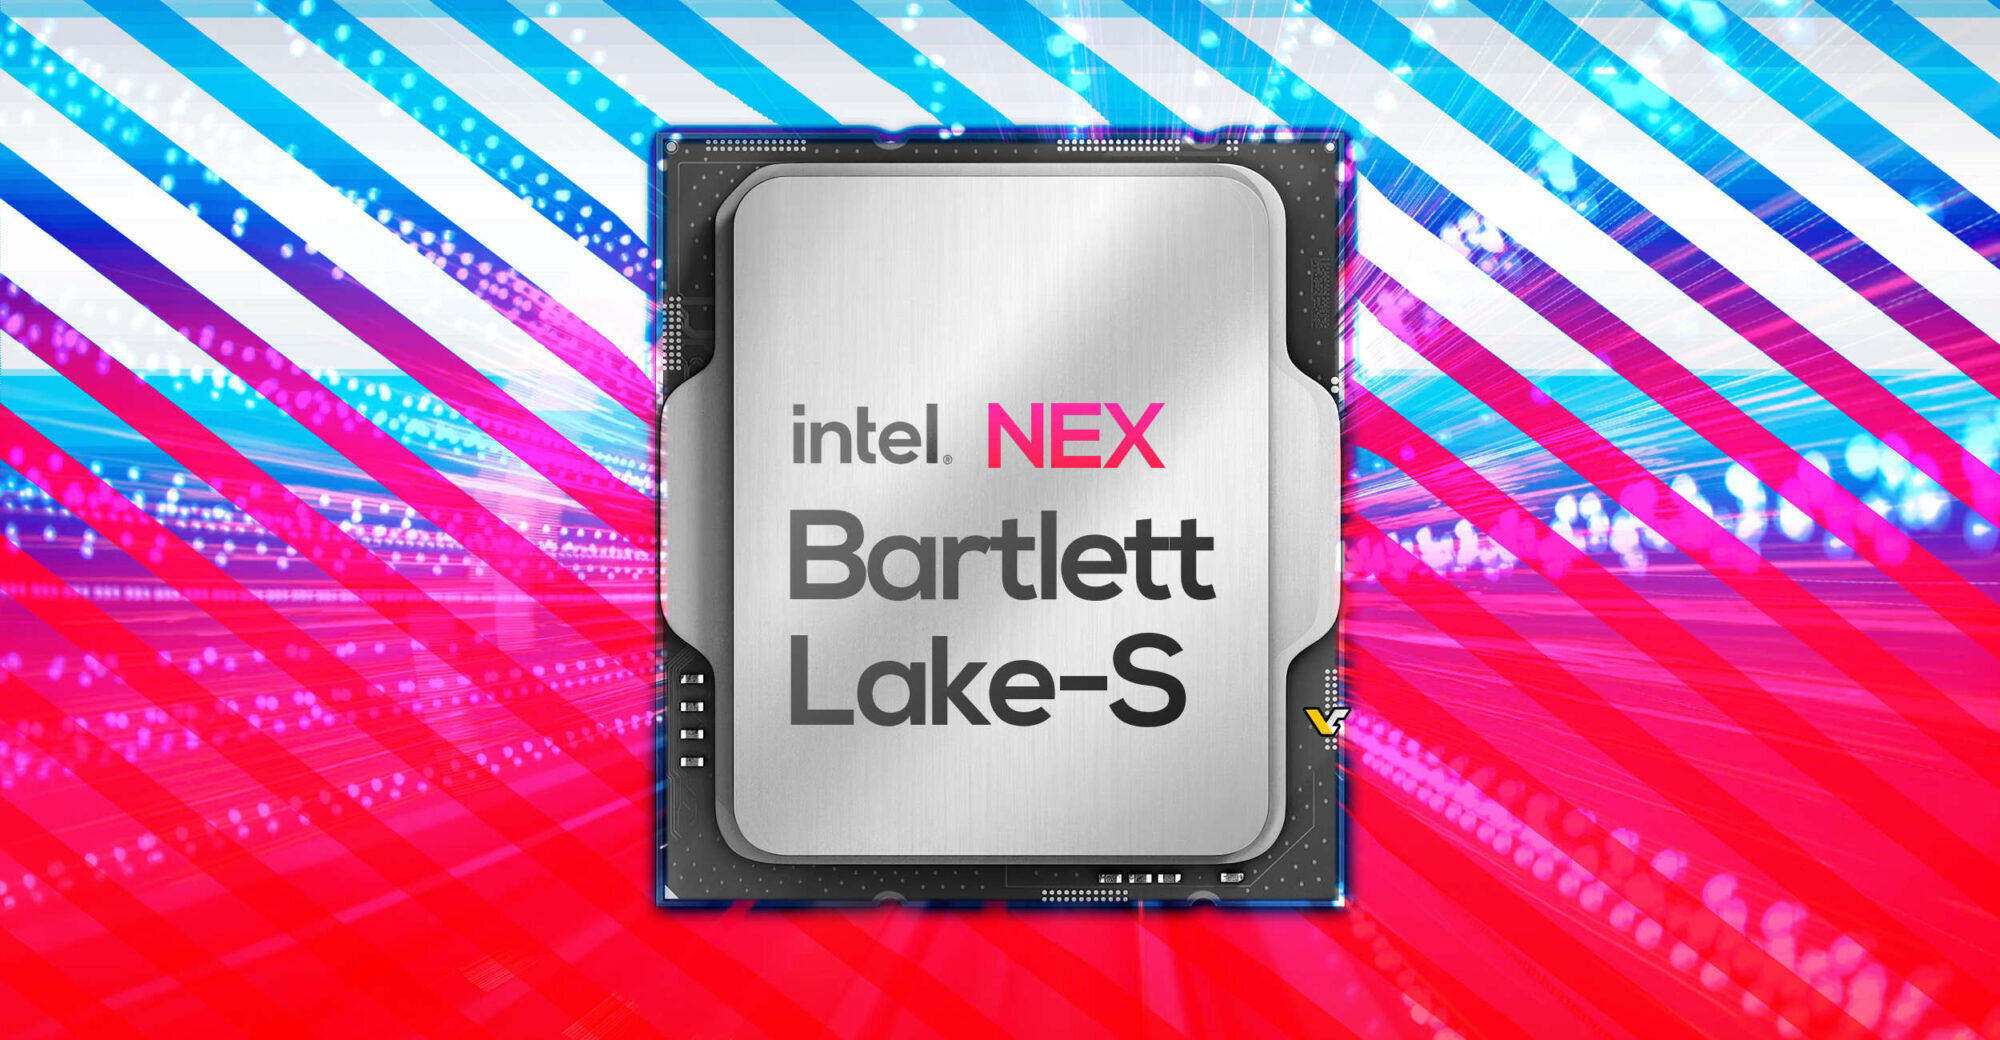 Οι επερχόμενοι επεξεργαστές Bartlett Lake-S της Intel βρίσκονται στο τελικό στάδιο της ανάπτυξης